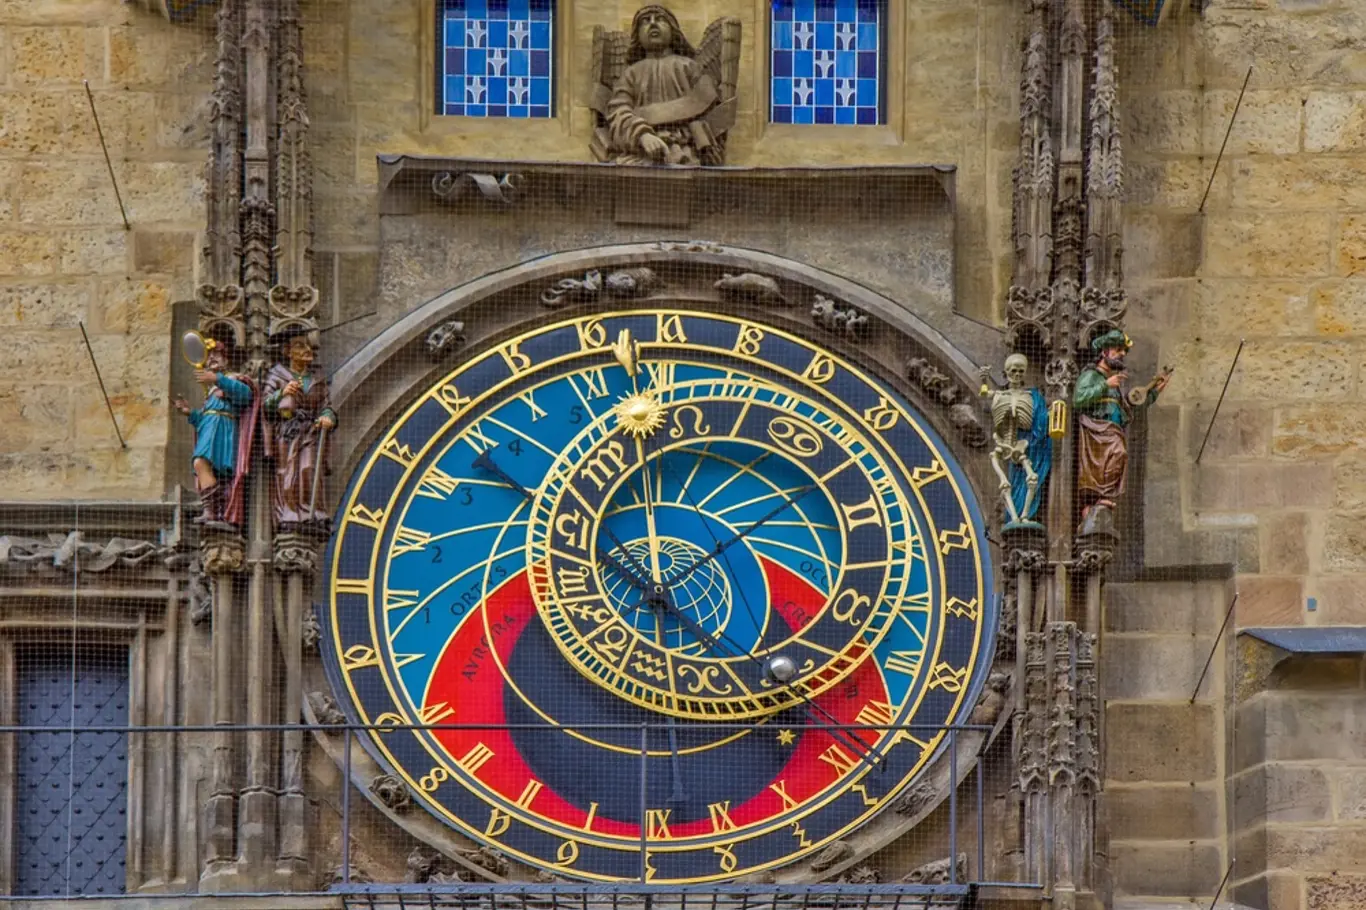 Pražský orloj je světovou aktrakcí